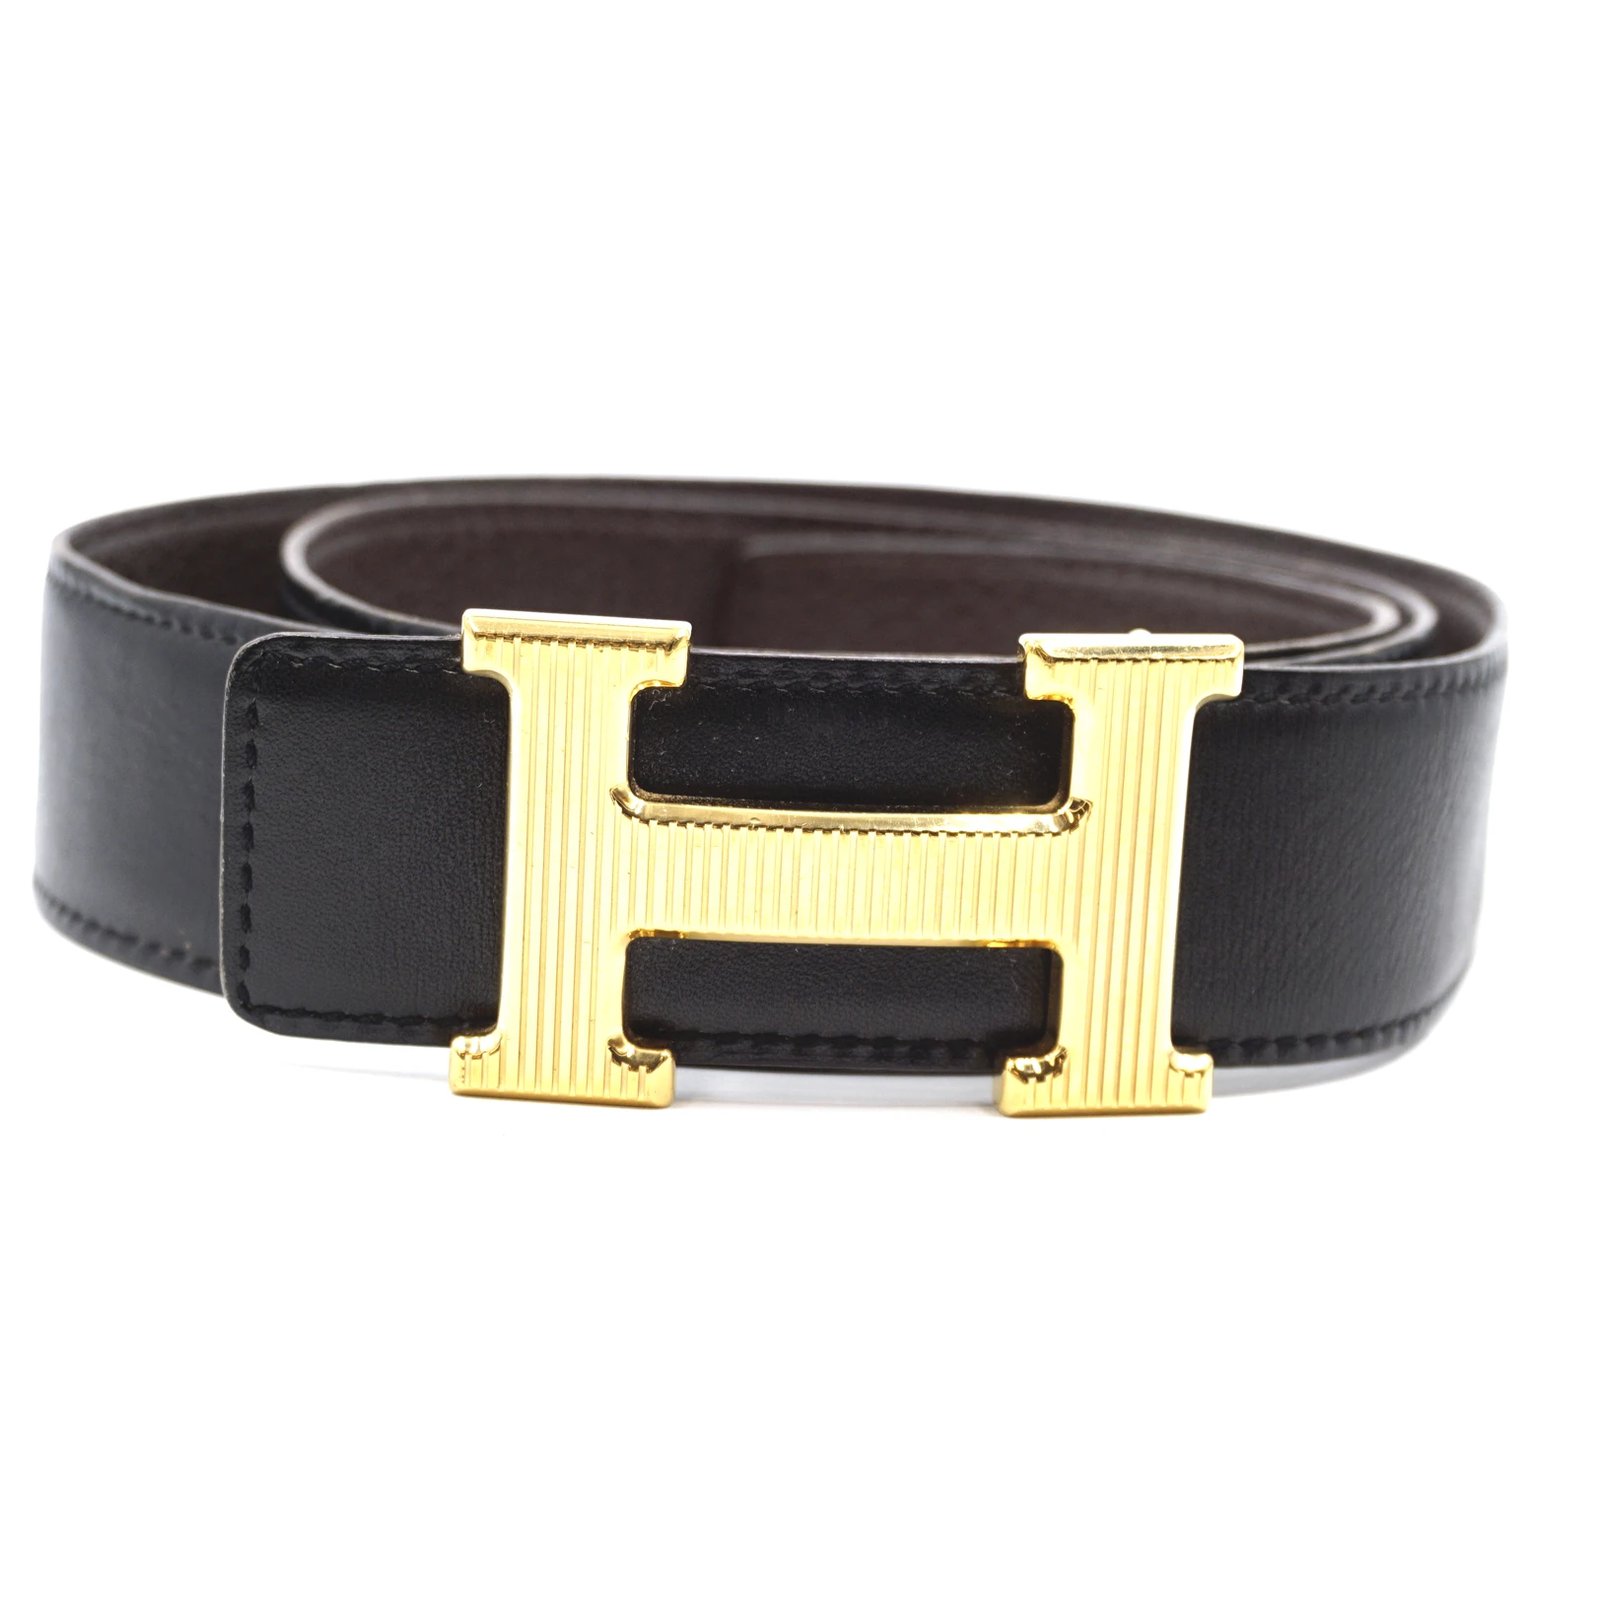 black and gold hermes belt